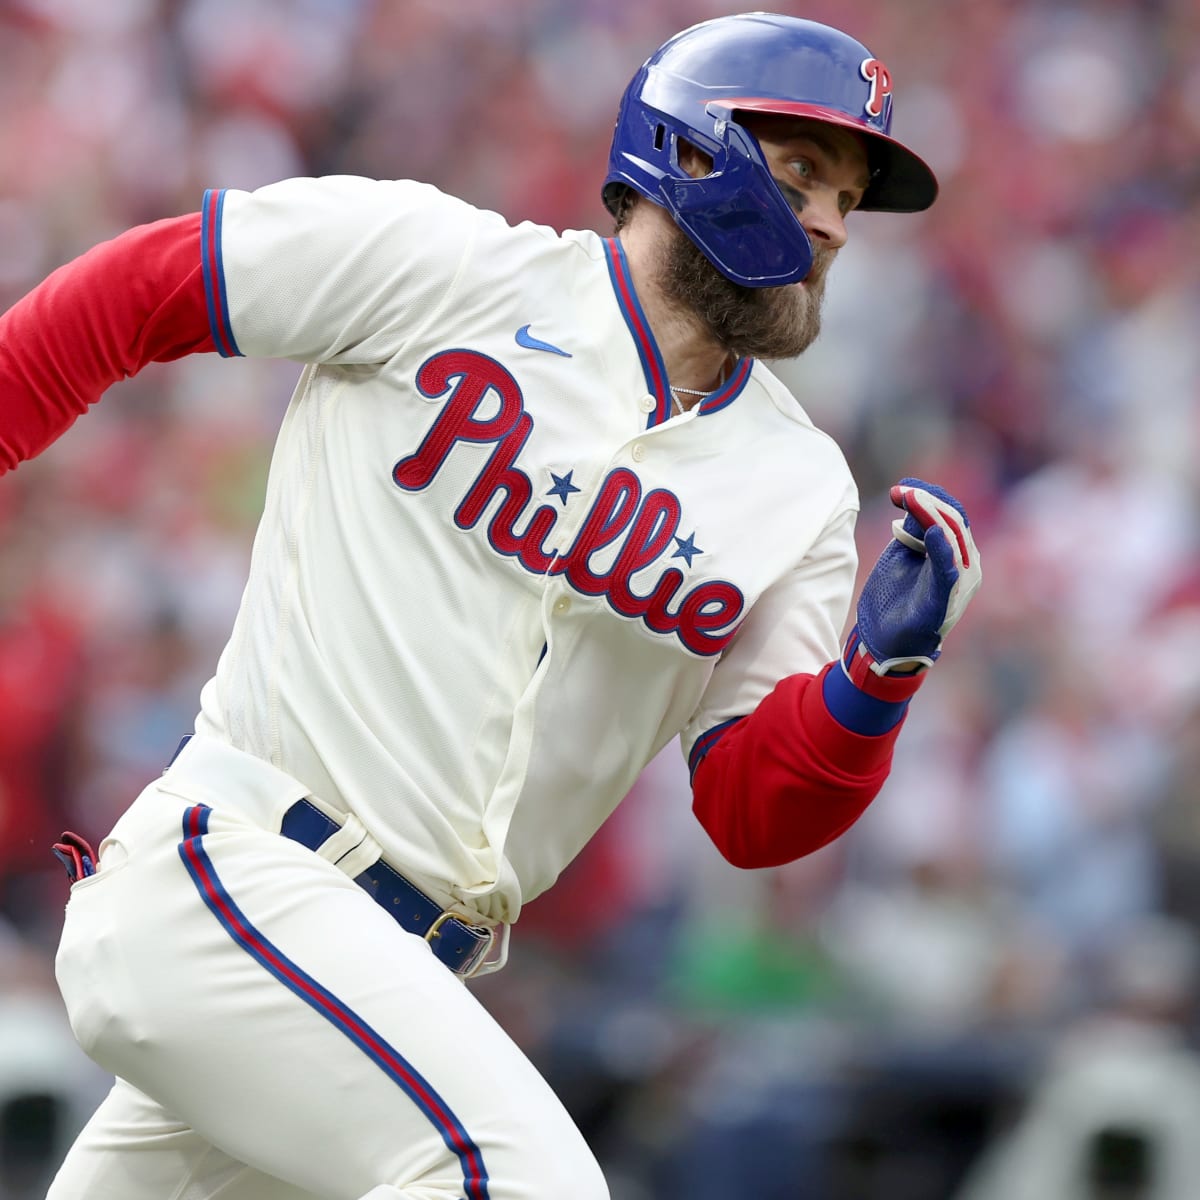 Bryce Harper, Phillies tie World Series mark with 5 HR, top Astros